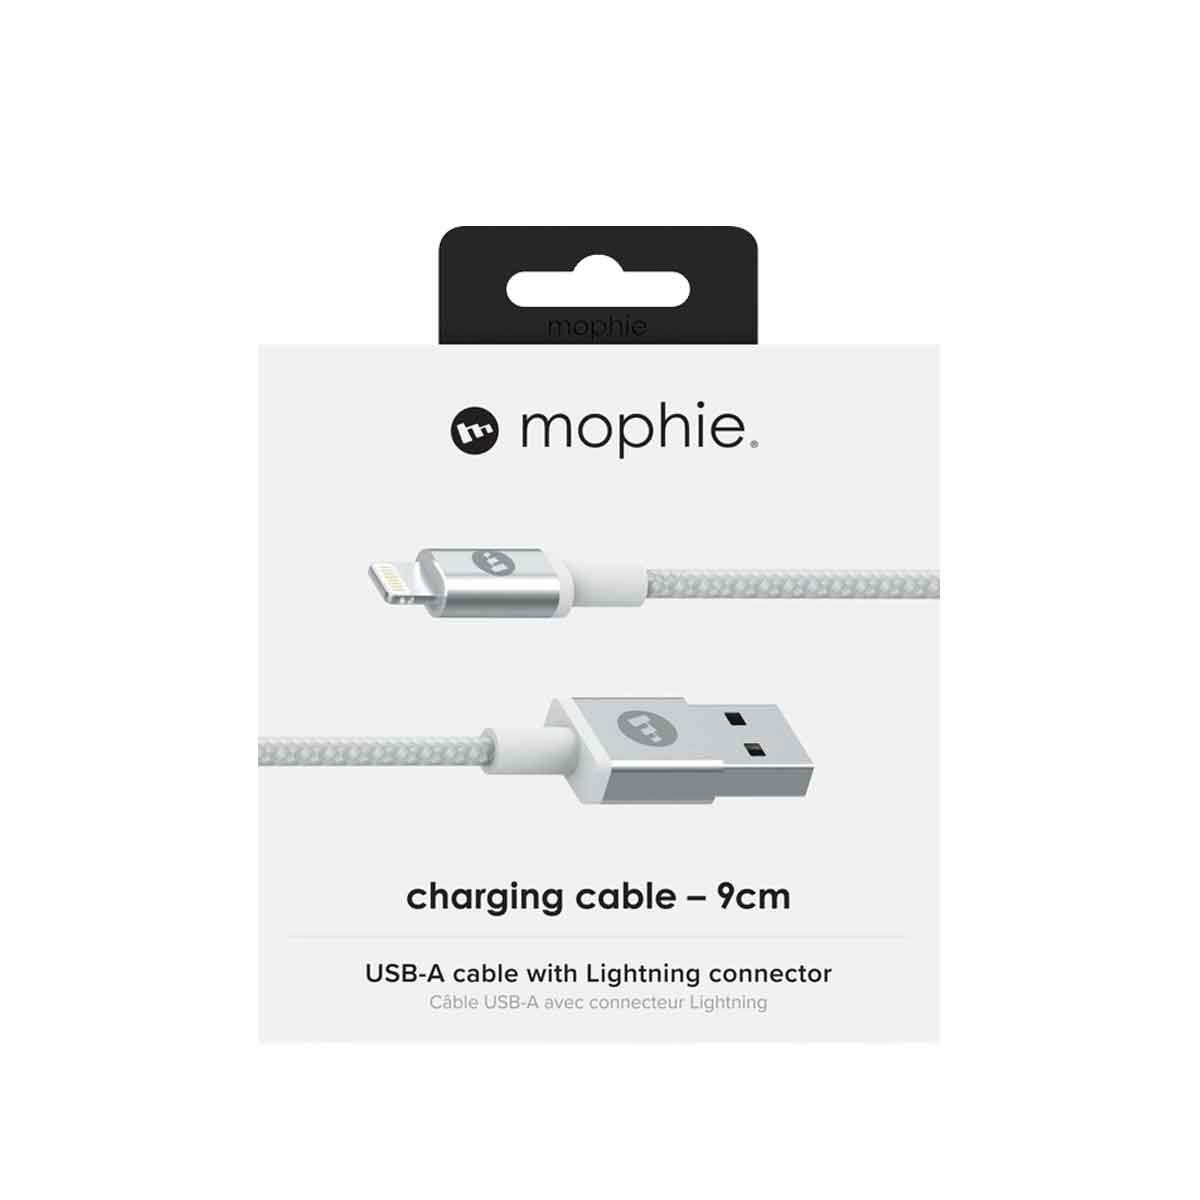 Cáp LN Mophie 9cm - chống rối - đạt chứng nhận MFI từ Apple dành cho iPhone - Hàng chính hãng